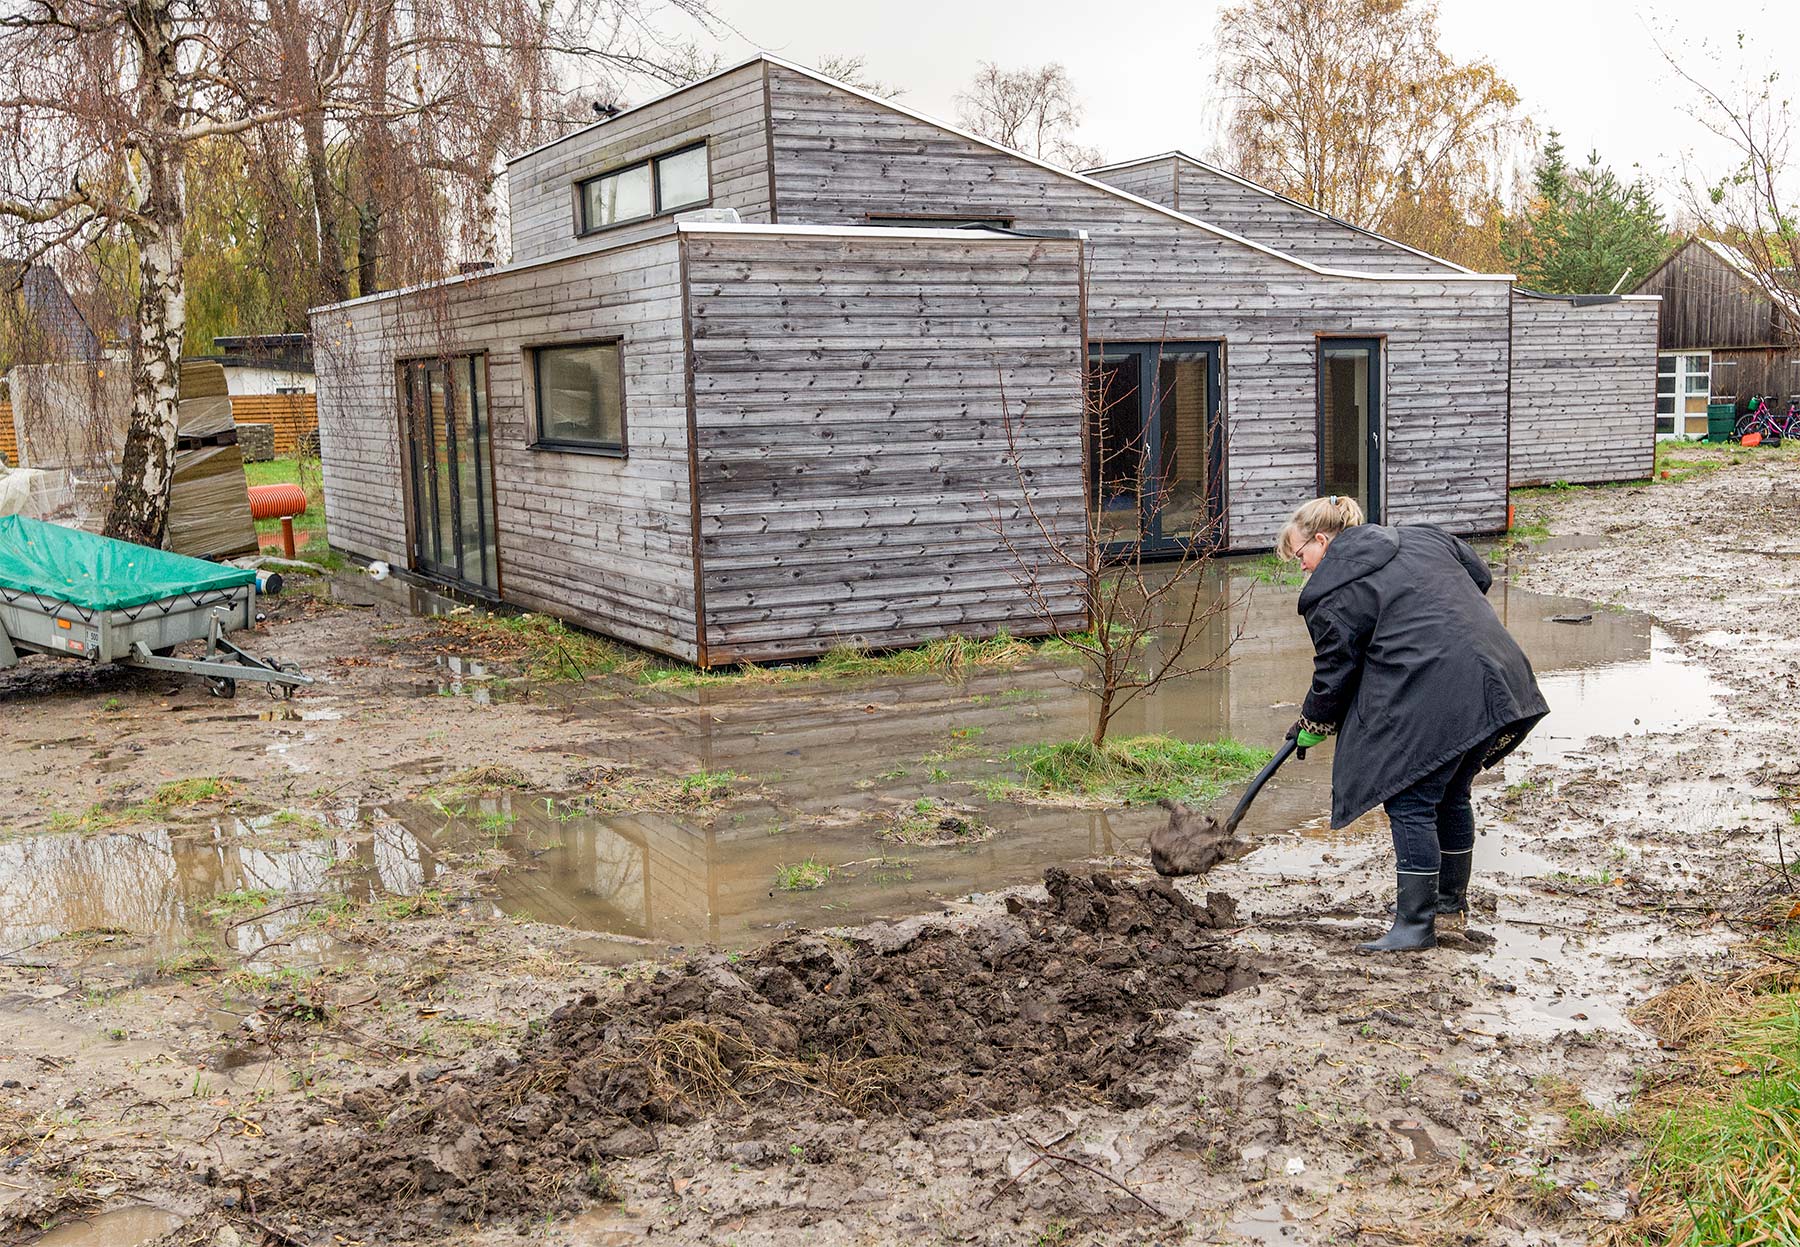 Der kæmpes med at holde vand og mudder væk fra huse. Foto: TorbenStender.